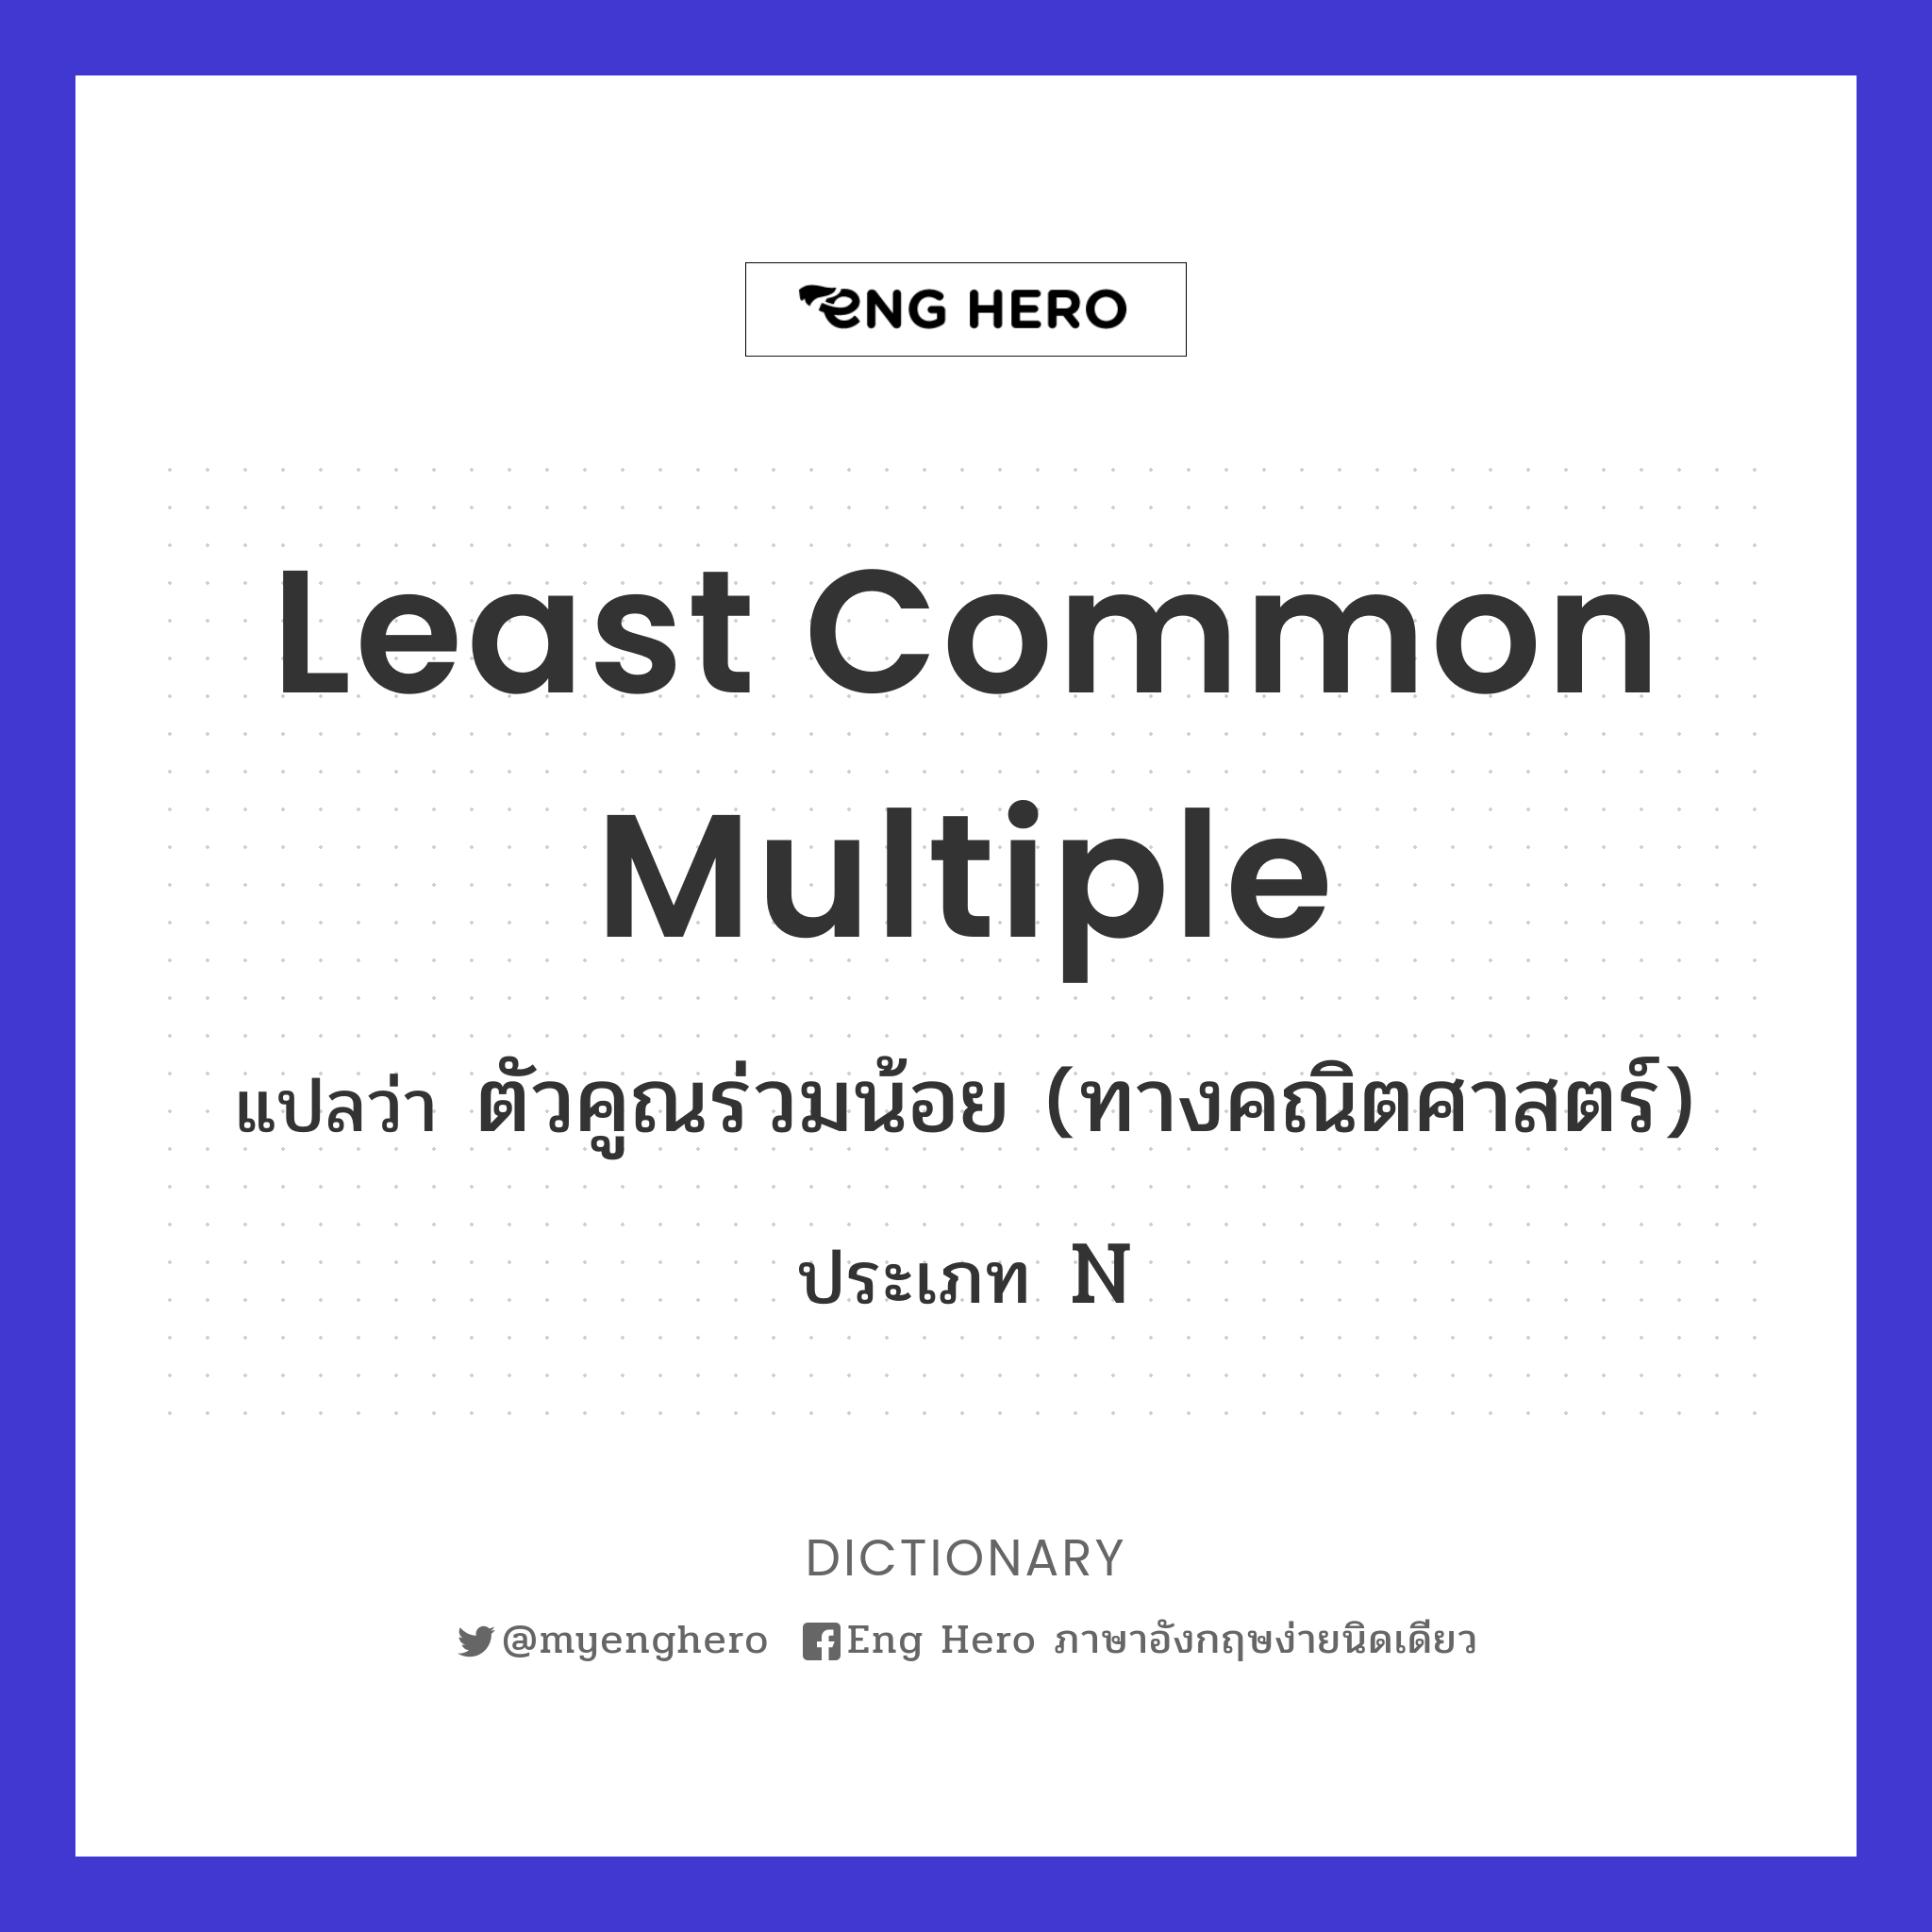 least common multiple